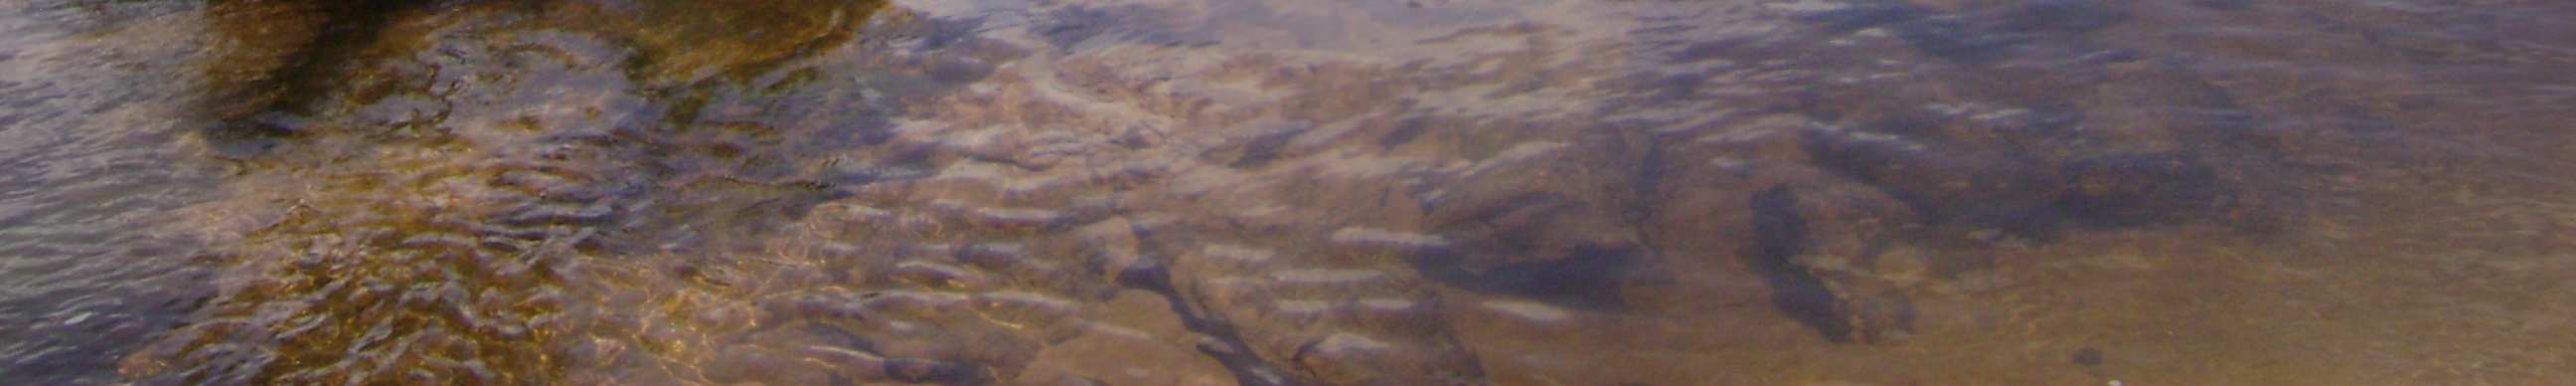 Habitat: Exemplares de Astyanax novae provenientes do rio Novo, Tocantins, foram coletados